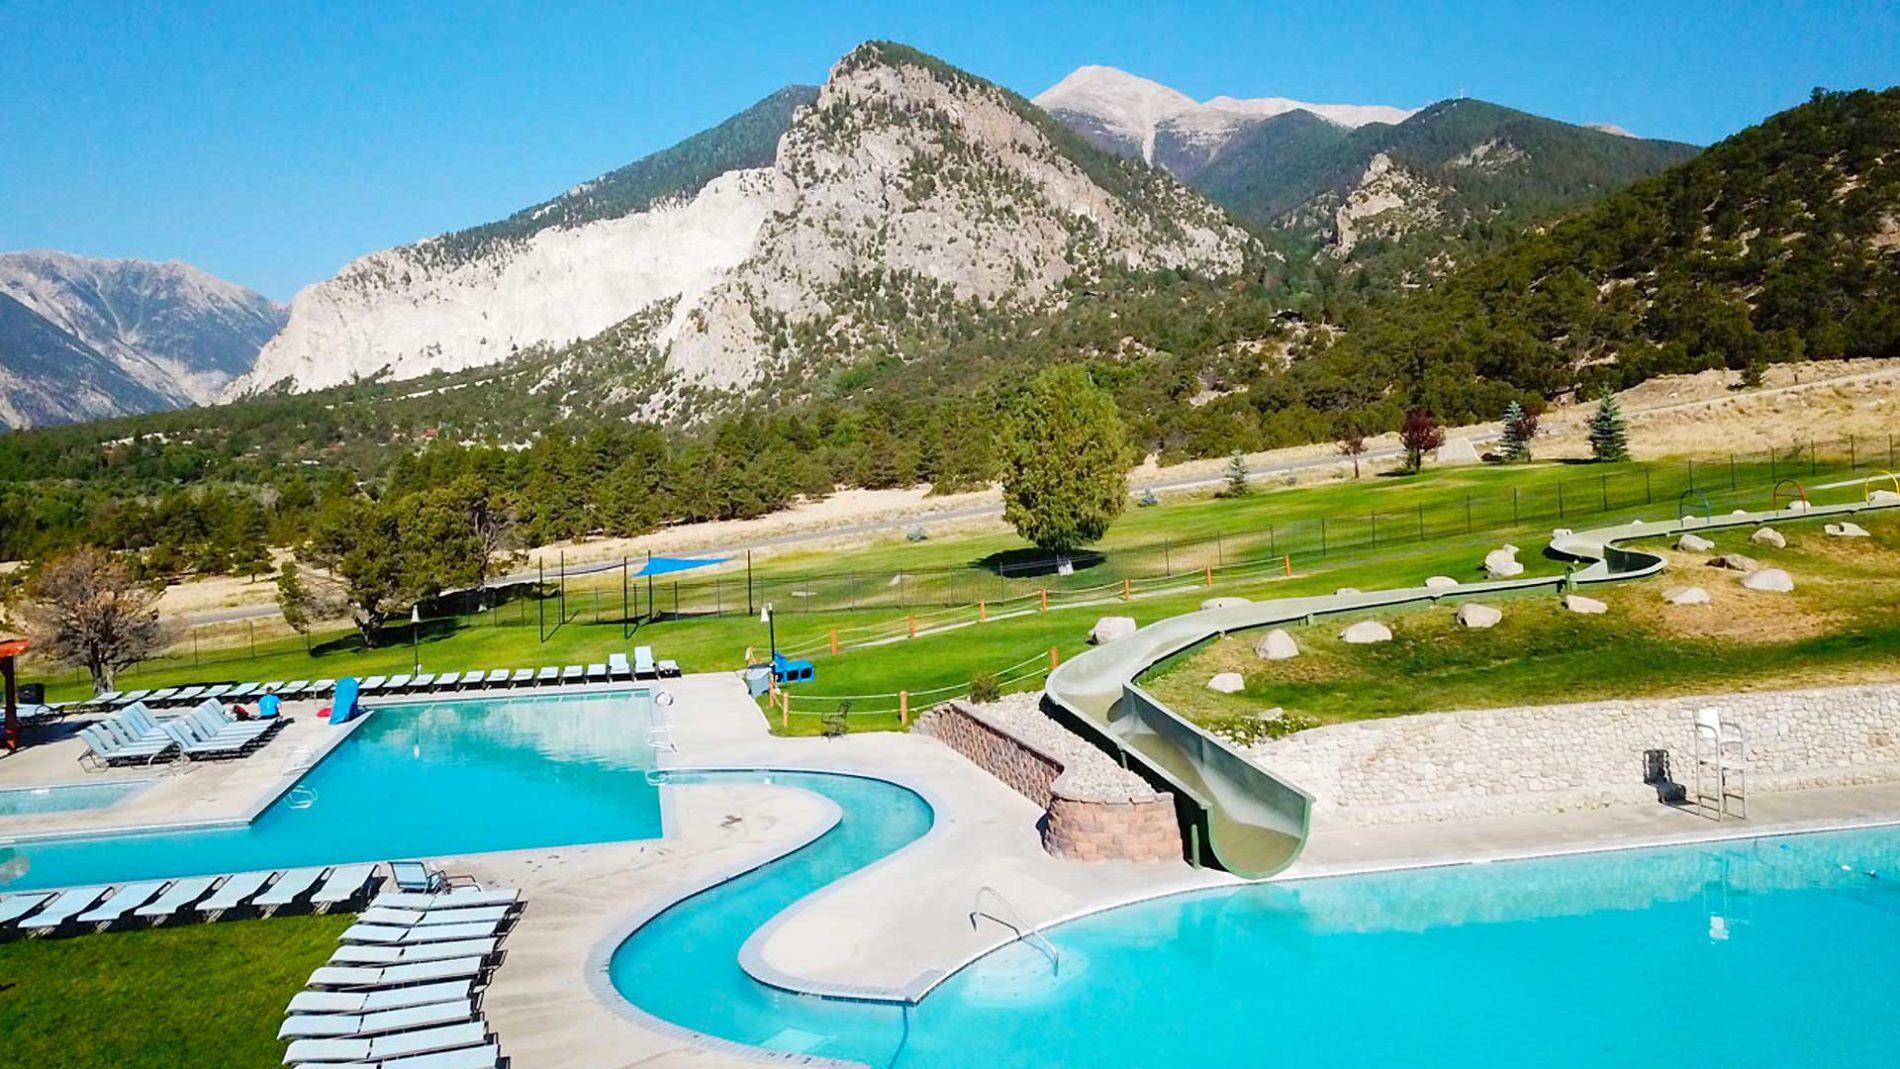 Water Slide - Mount Princeton Hot Springs Resort